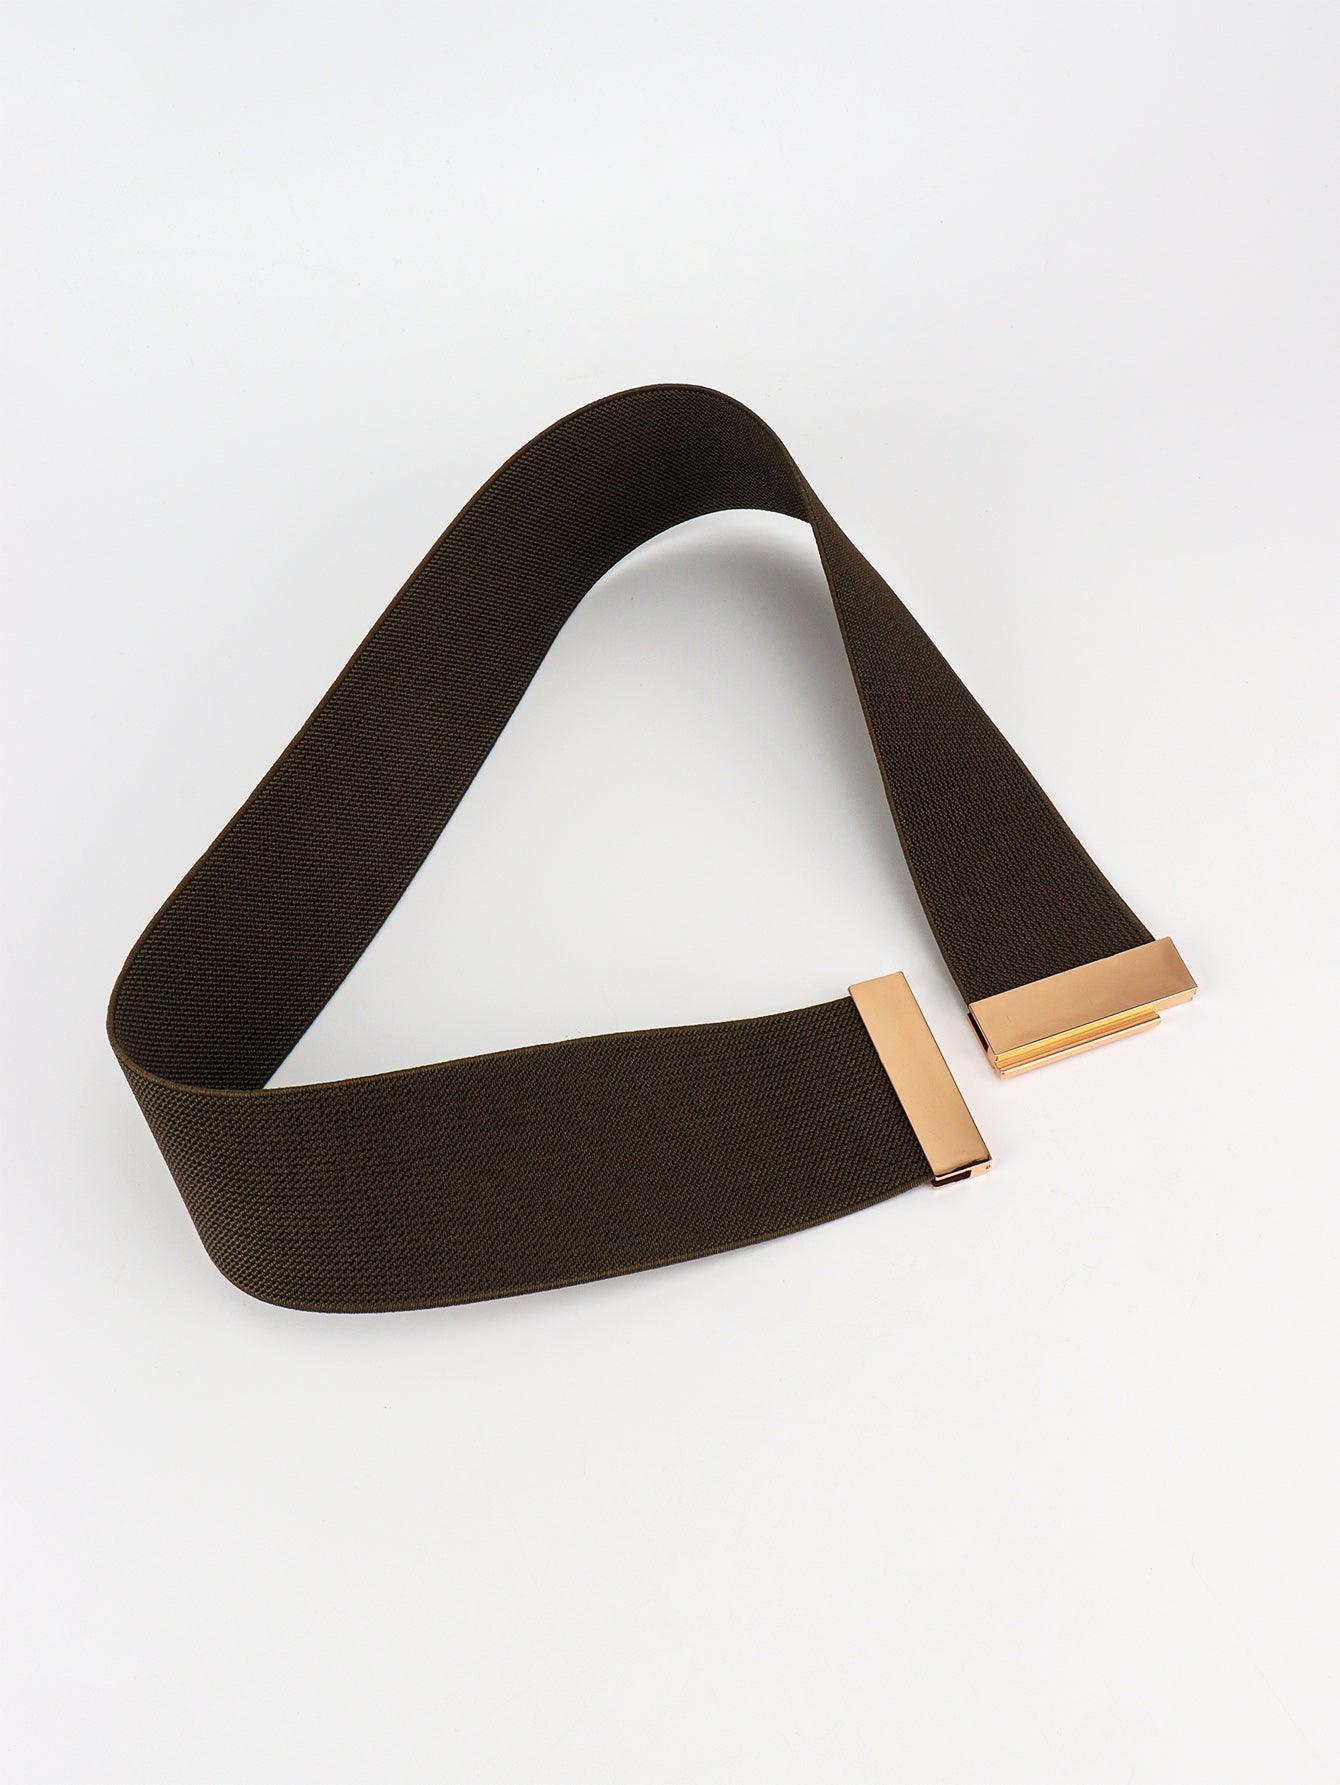 Alloy Buckle Elastic Belt - Lab Fashion, Home & Health